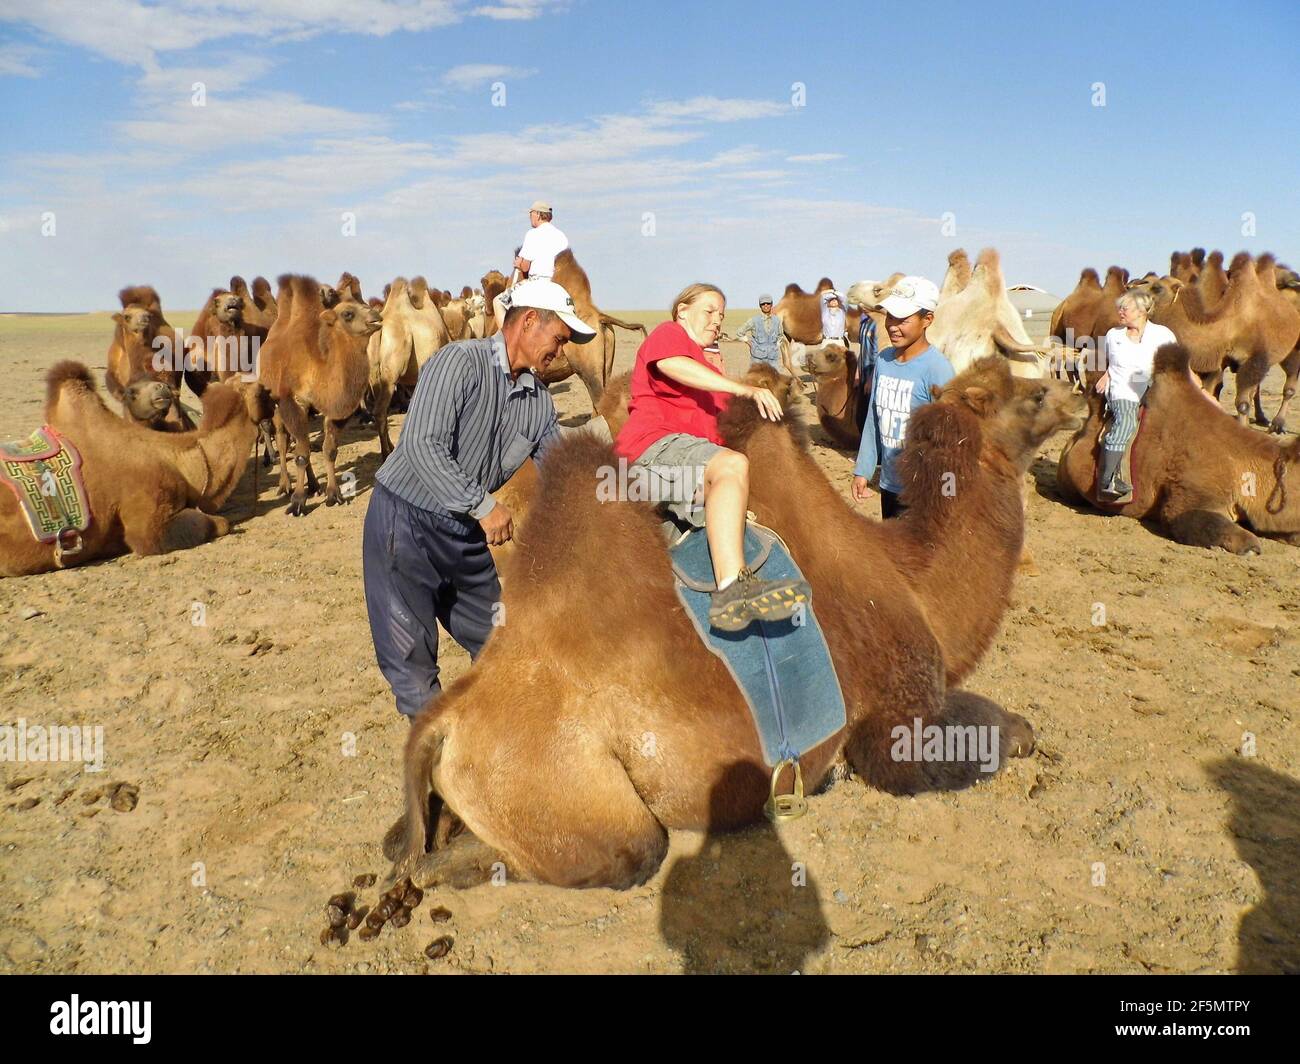 Kamelritt in der Wüste Gobi, Mongolei | camel ride at the Gobi desert, Mongolia Stock Photo